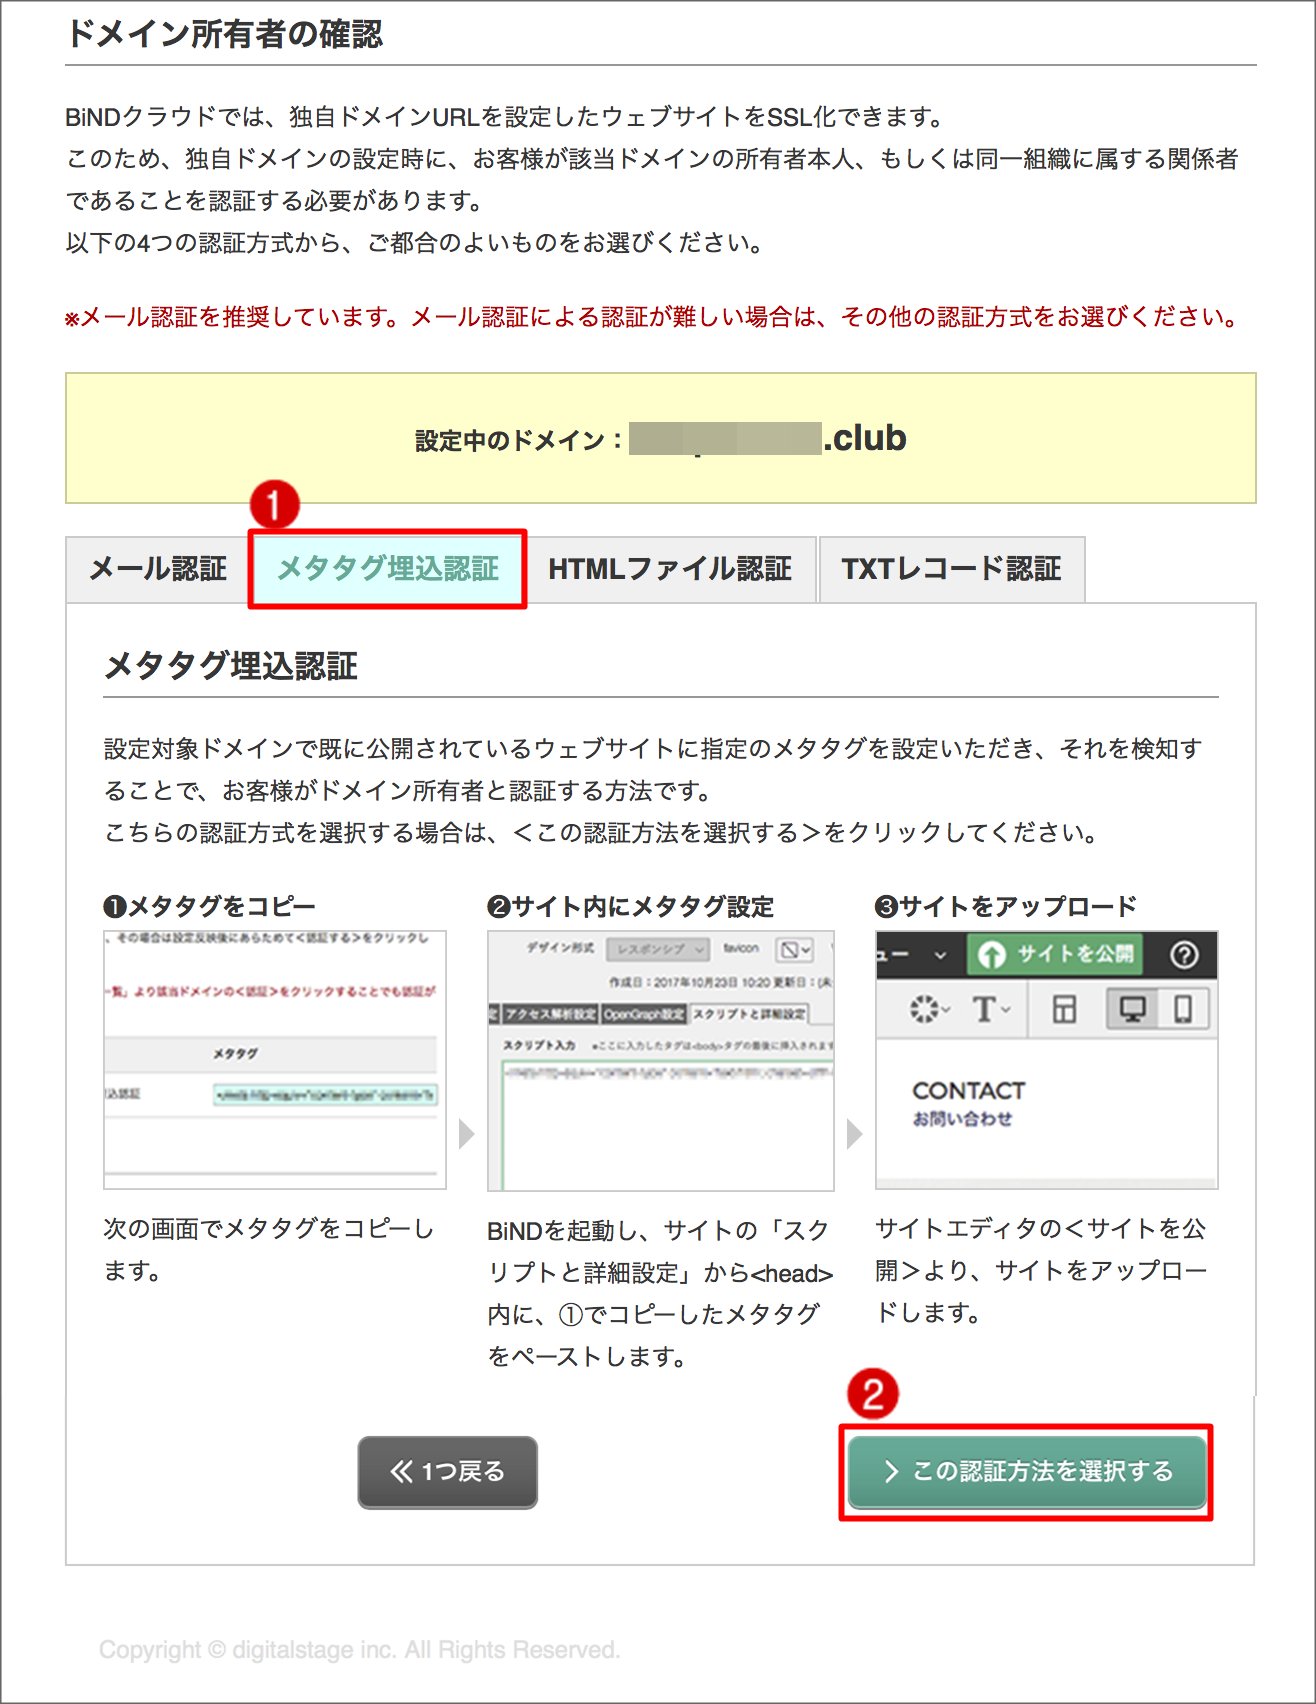 http://www.digitalstage.jp/support/weblife/manual/02-05-16_001.png